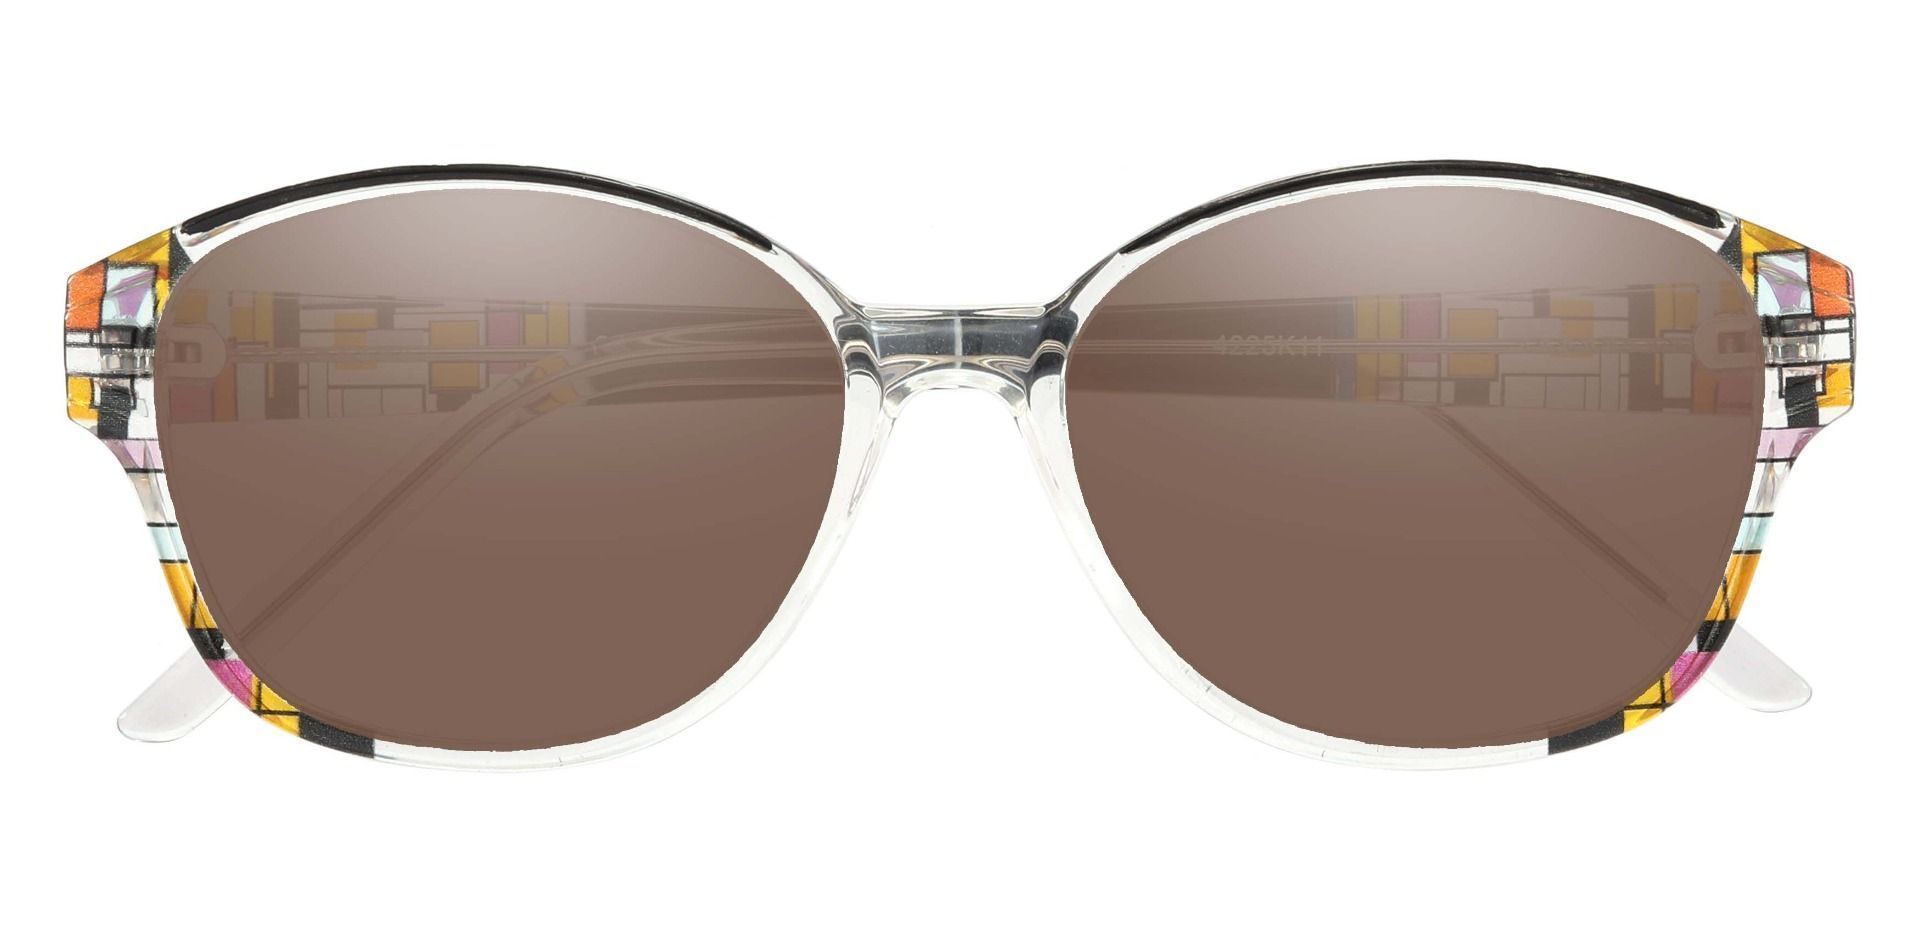 Moira Oval Prescription Sunglasses - Black Frame With Brown Lenses